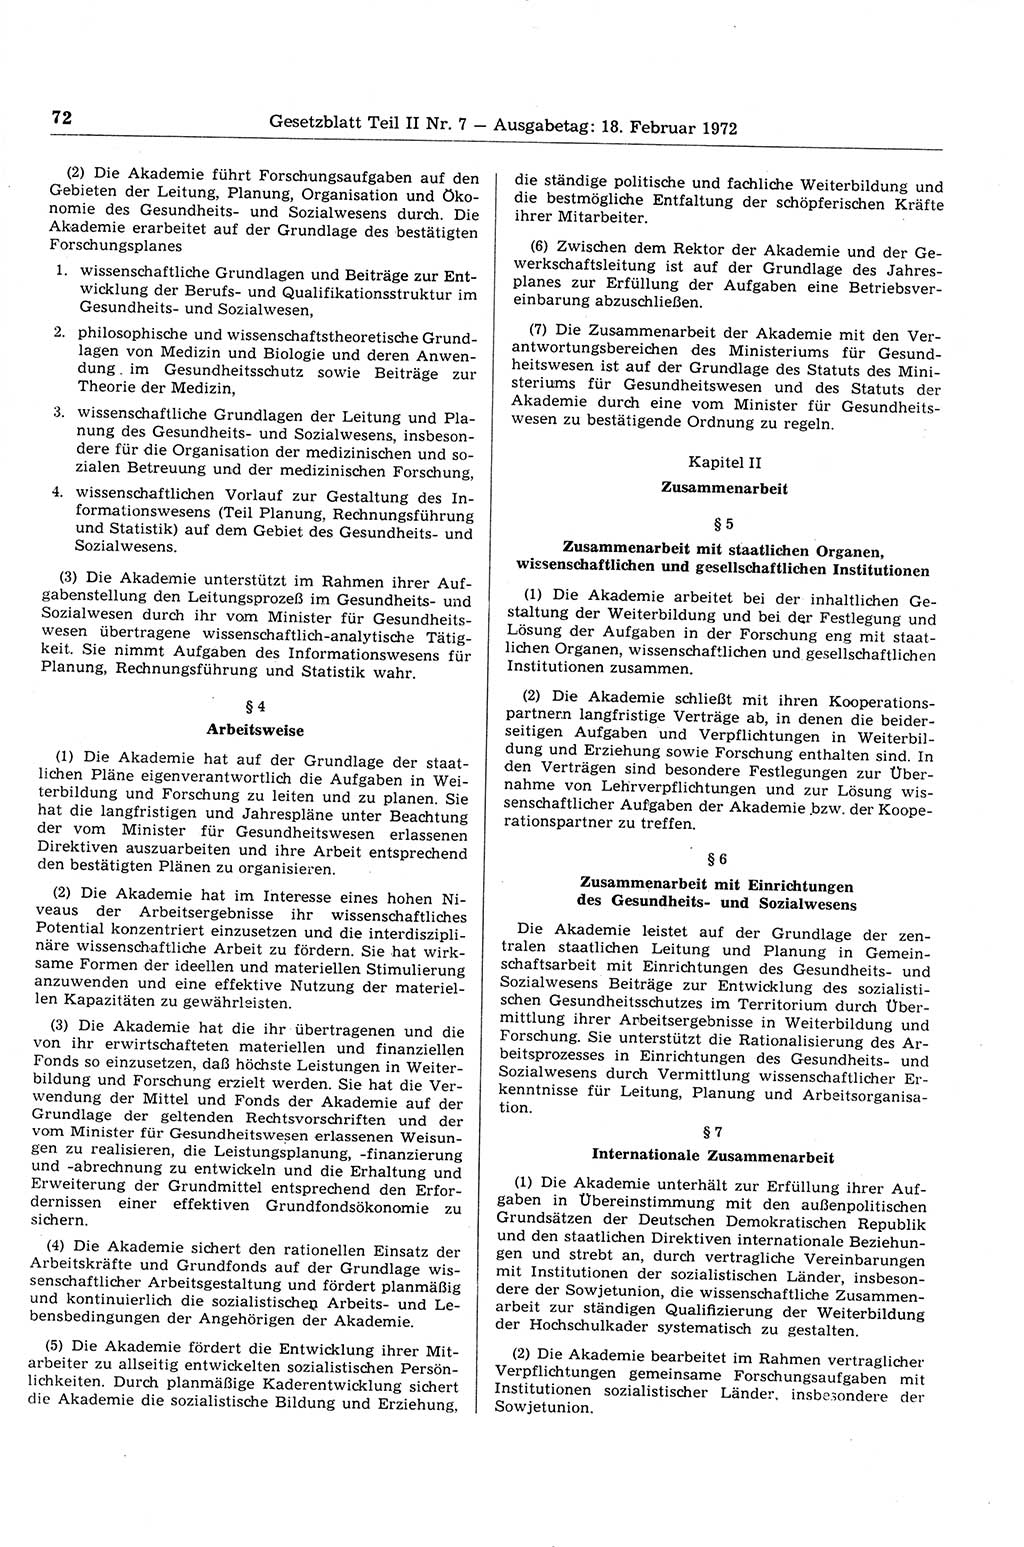 Gesetzblatt (GBl.) der Deutschen Demokratischen Republik (DDR) Teil ⅠⅠ 1972, Seite 72 (GBl. DDR ⅠⅠ 1972, S. 72)